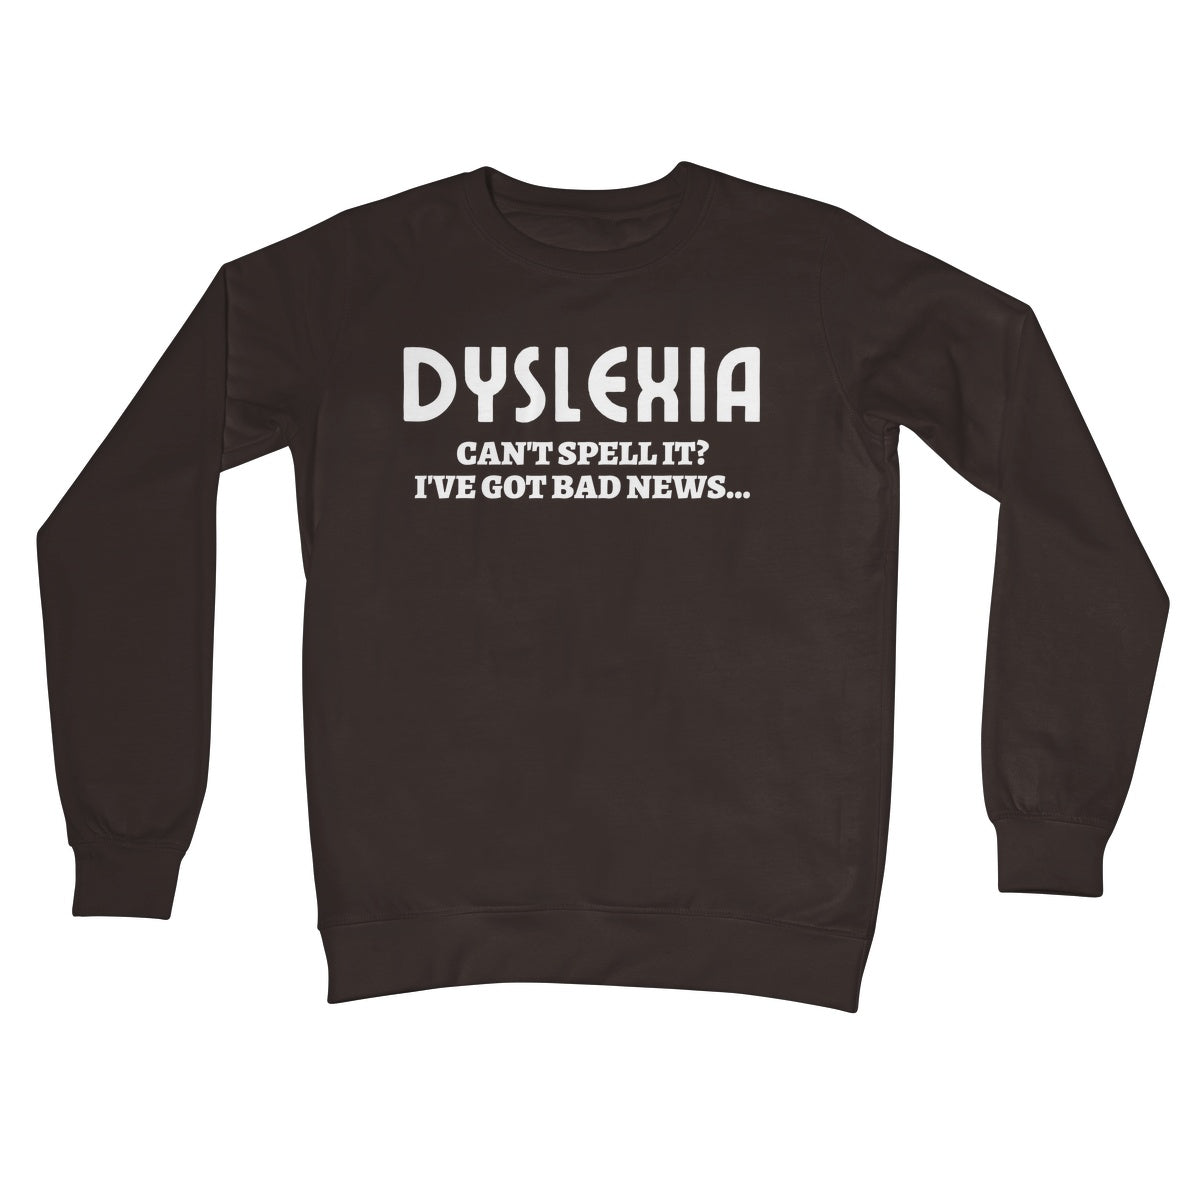 dyslexia jumper brown